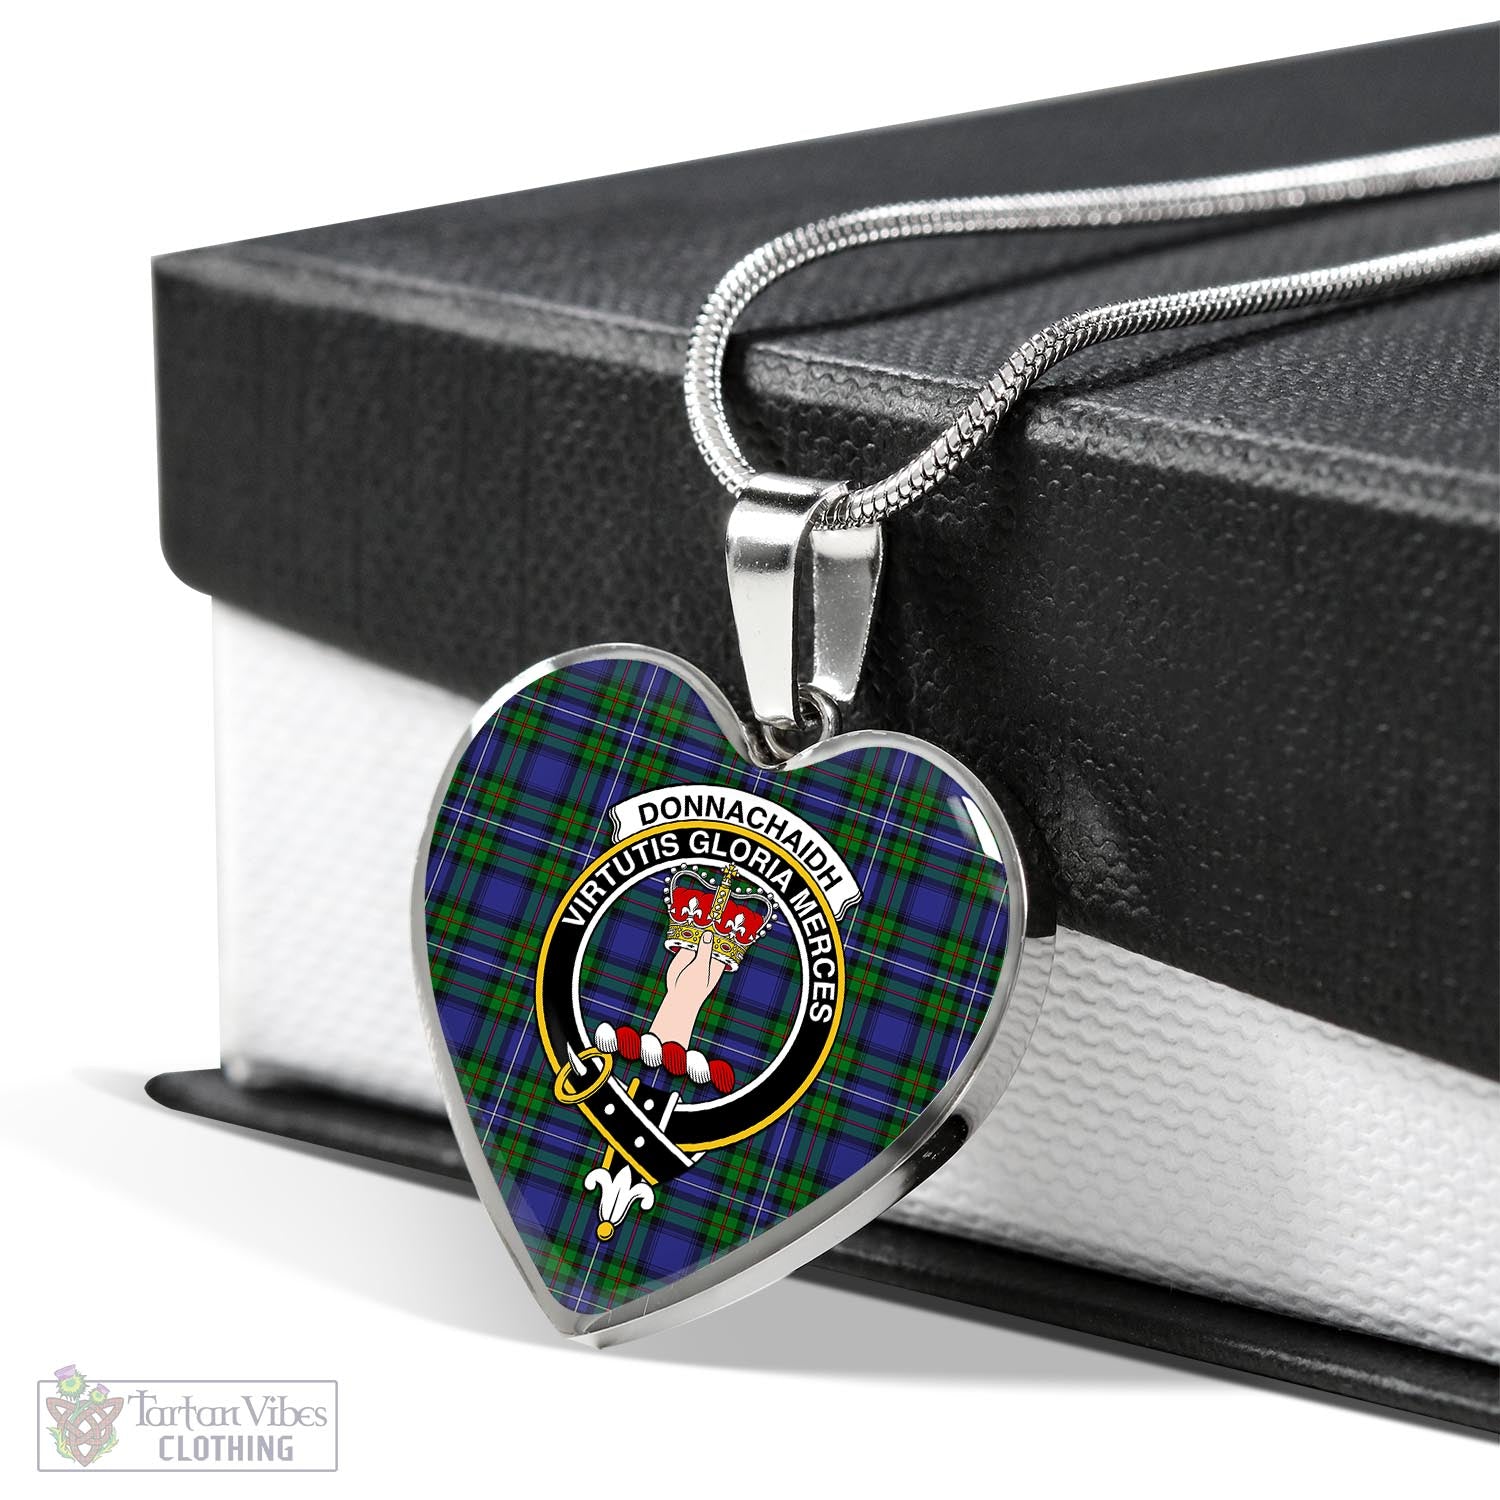 Tartan Vibes Clothing Donnachaidh Tartan Heart Necklace with Family Crest